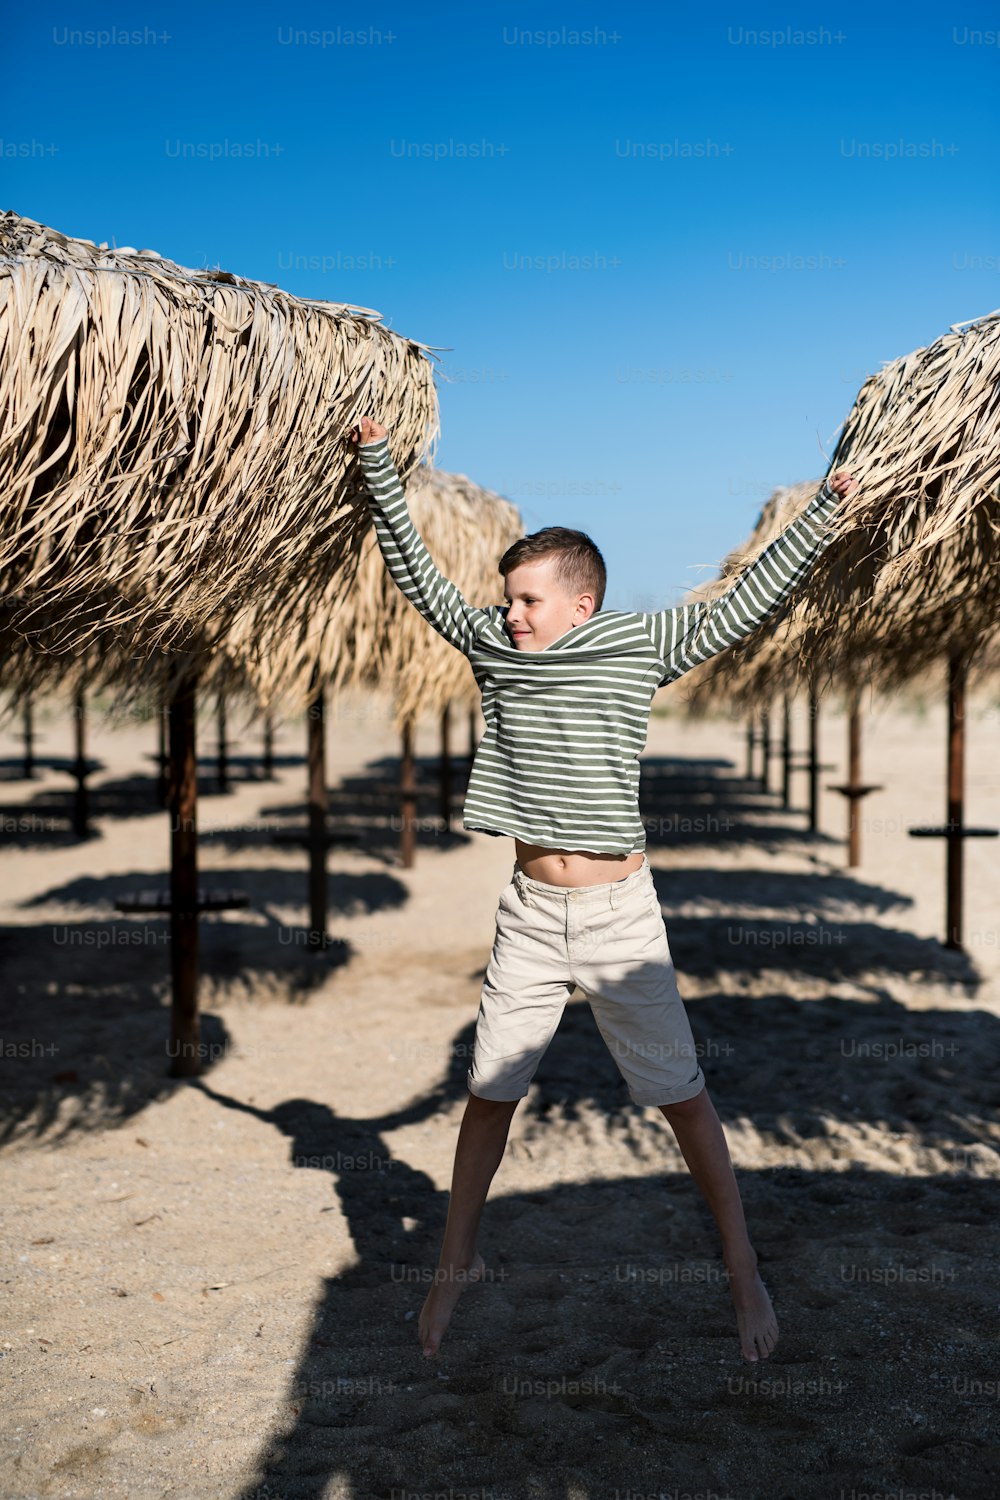 Un ragazzino allegro che gioca all'aperto sulla spiaggia di sabbia, saltando.